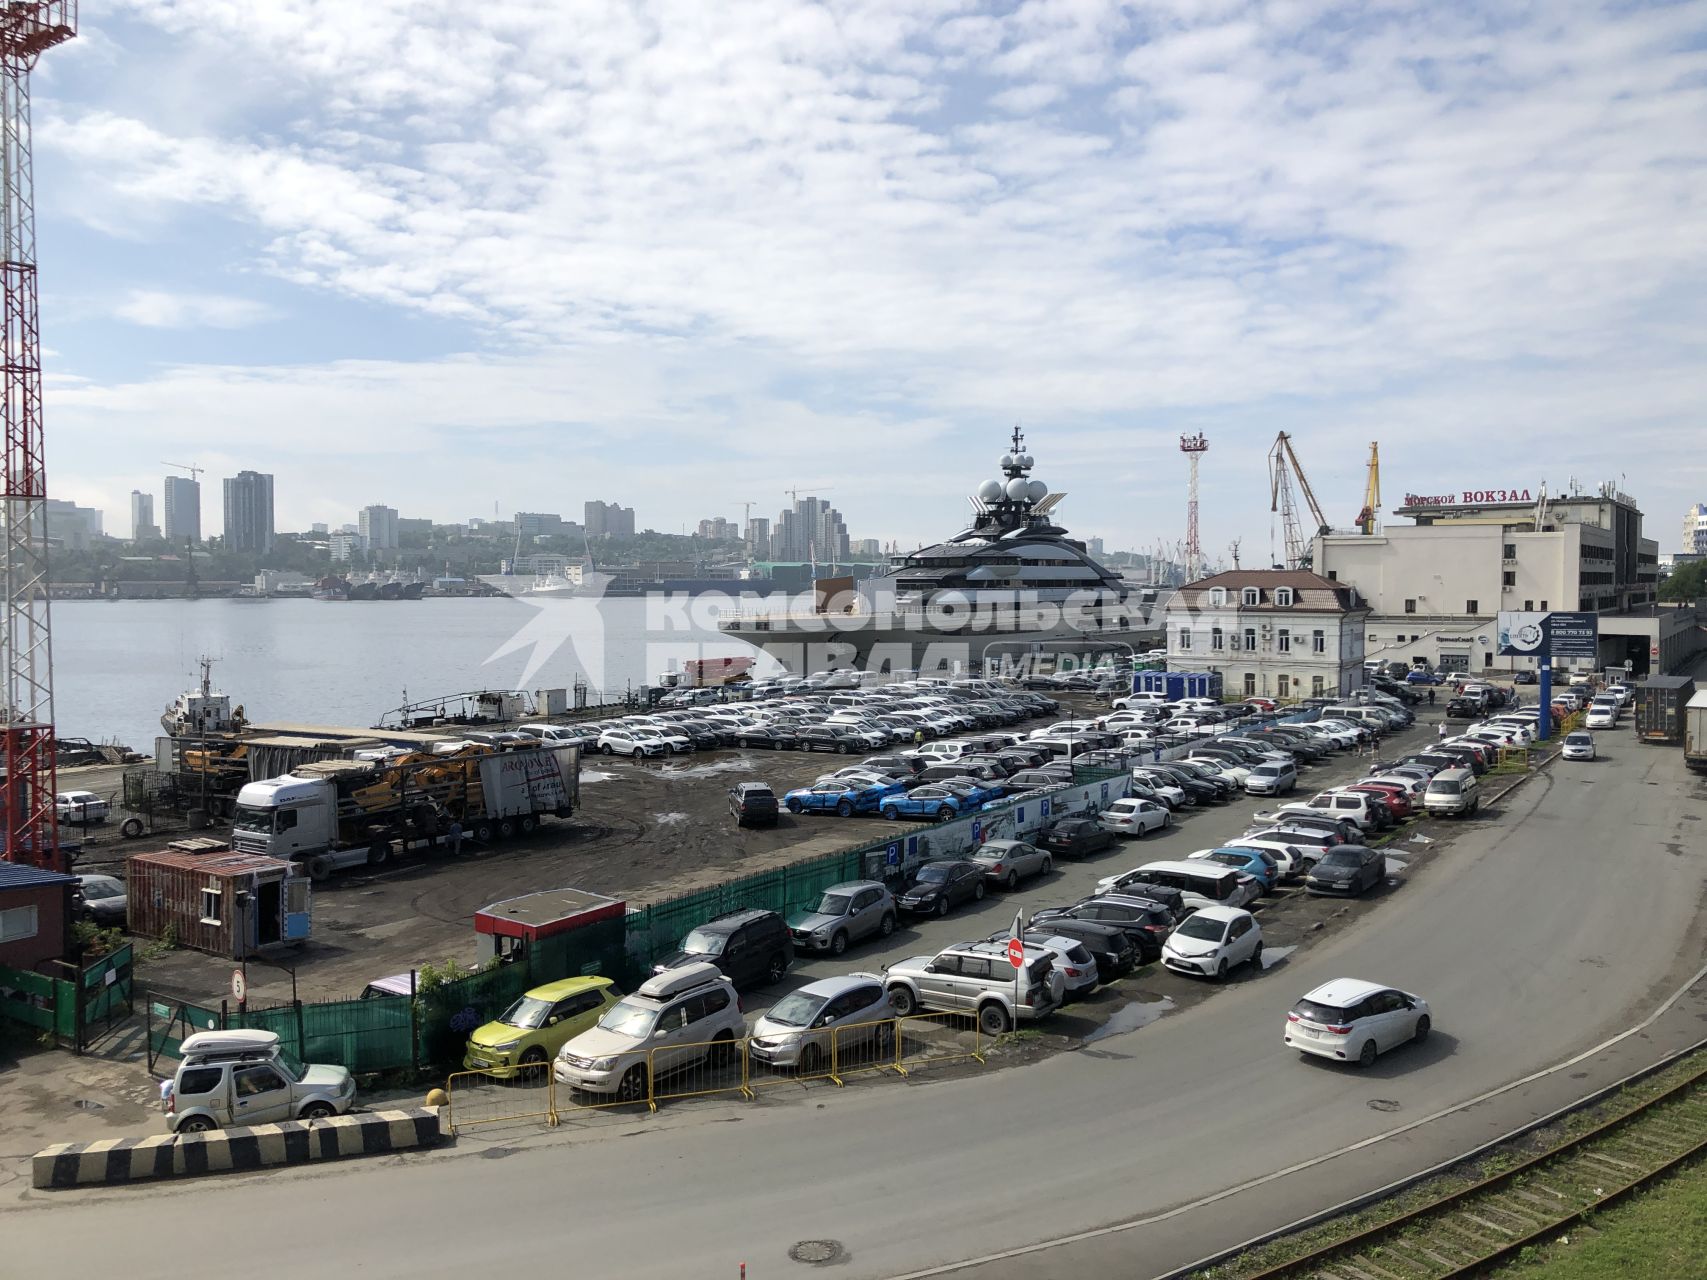 Владивосток. Суперъяхта Nord, владельцем которой  называют бизнесмеа Алексея Мордашова,  пришла во Владивосток.